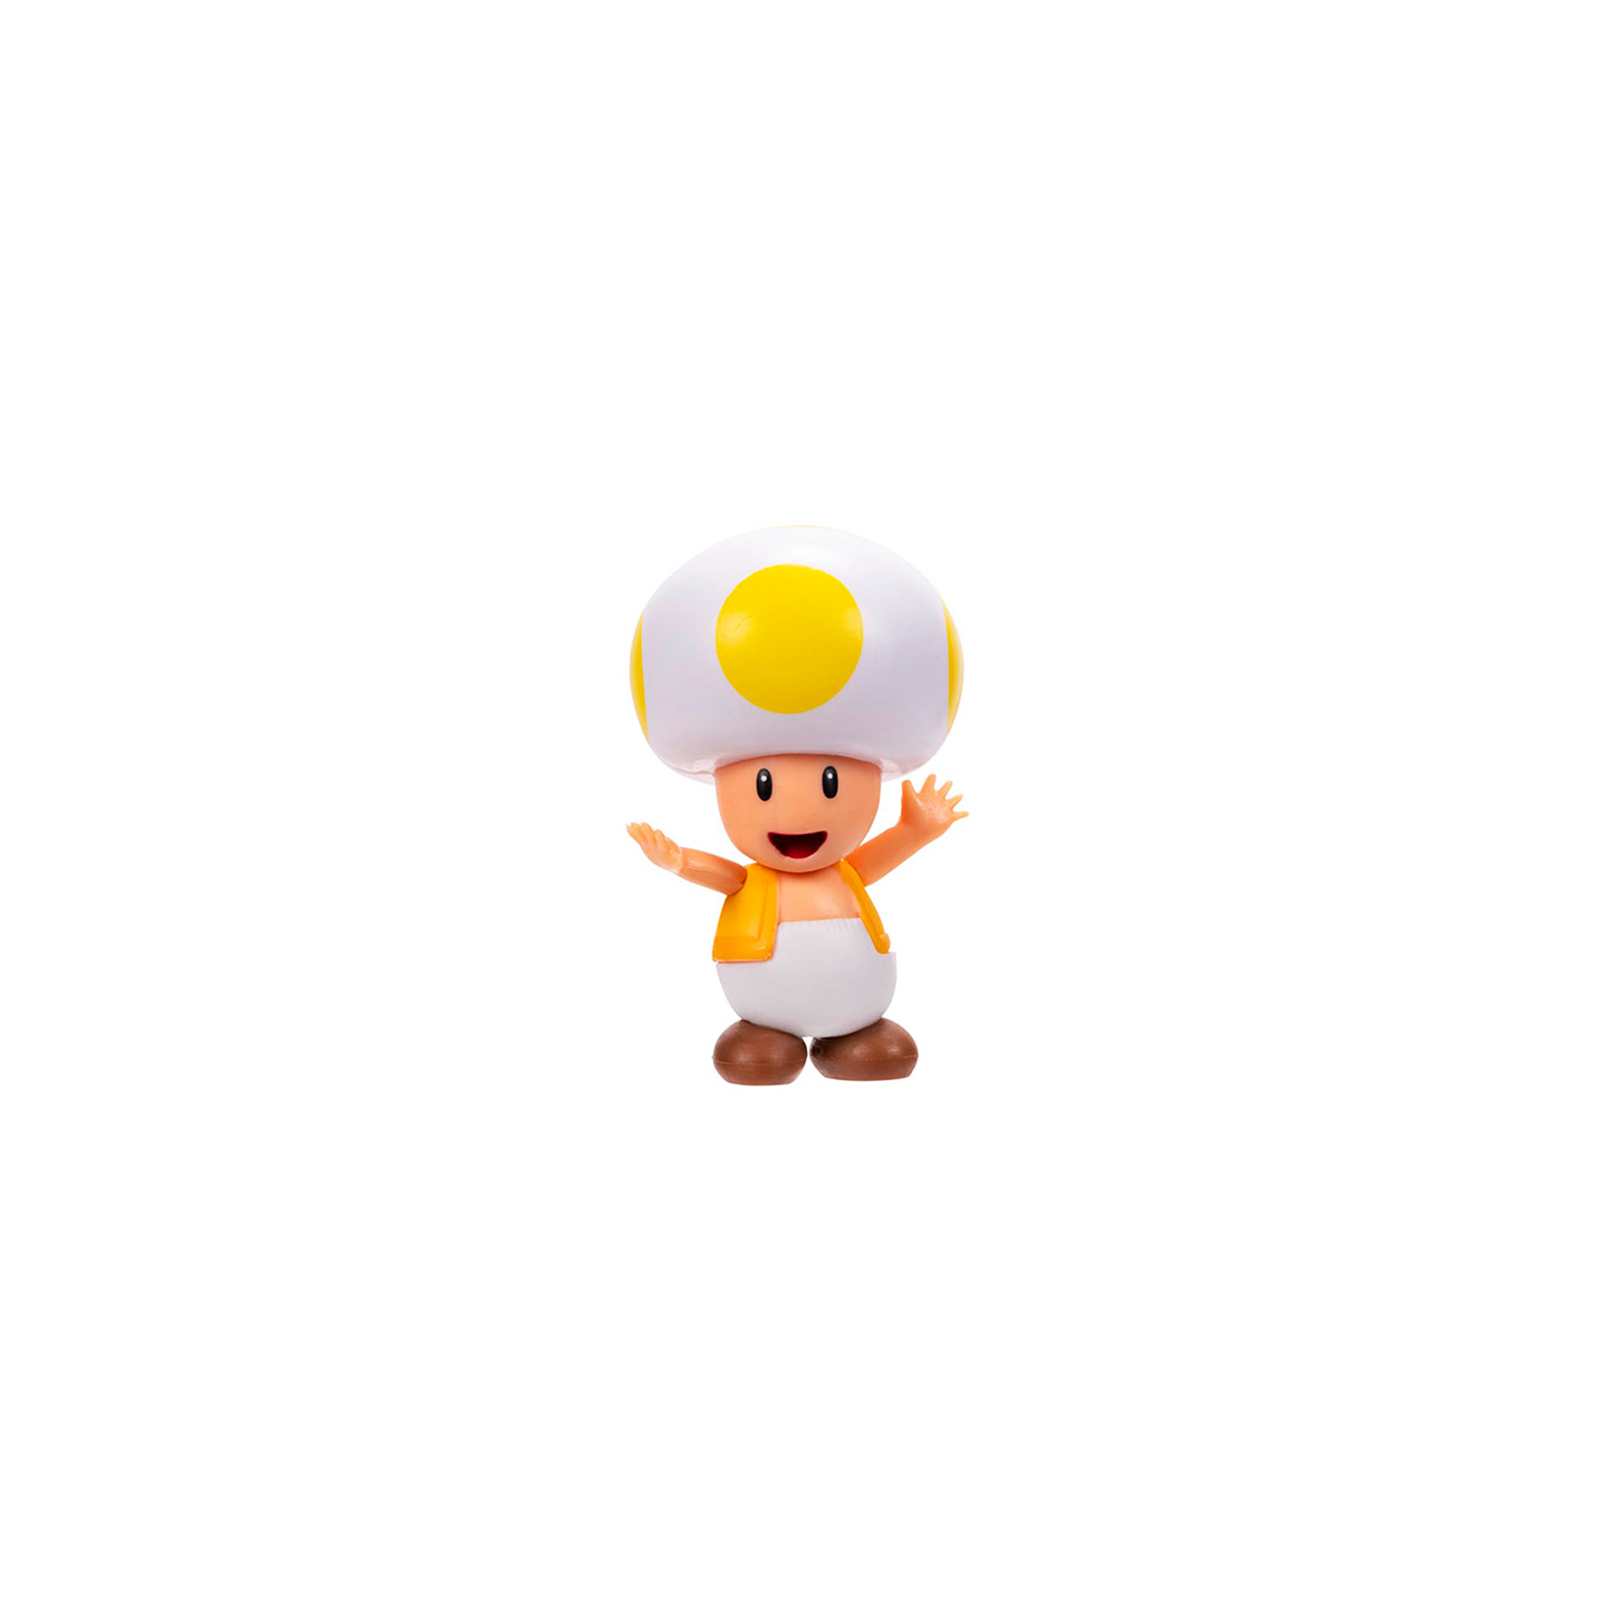 Фигурка Super Mario с артикуляцией – Желтый Тоад 6 см (41291i-GEN)